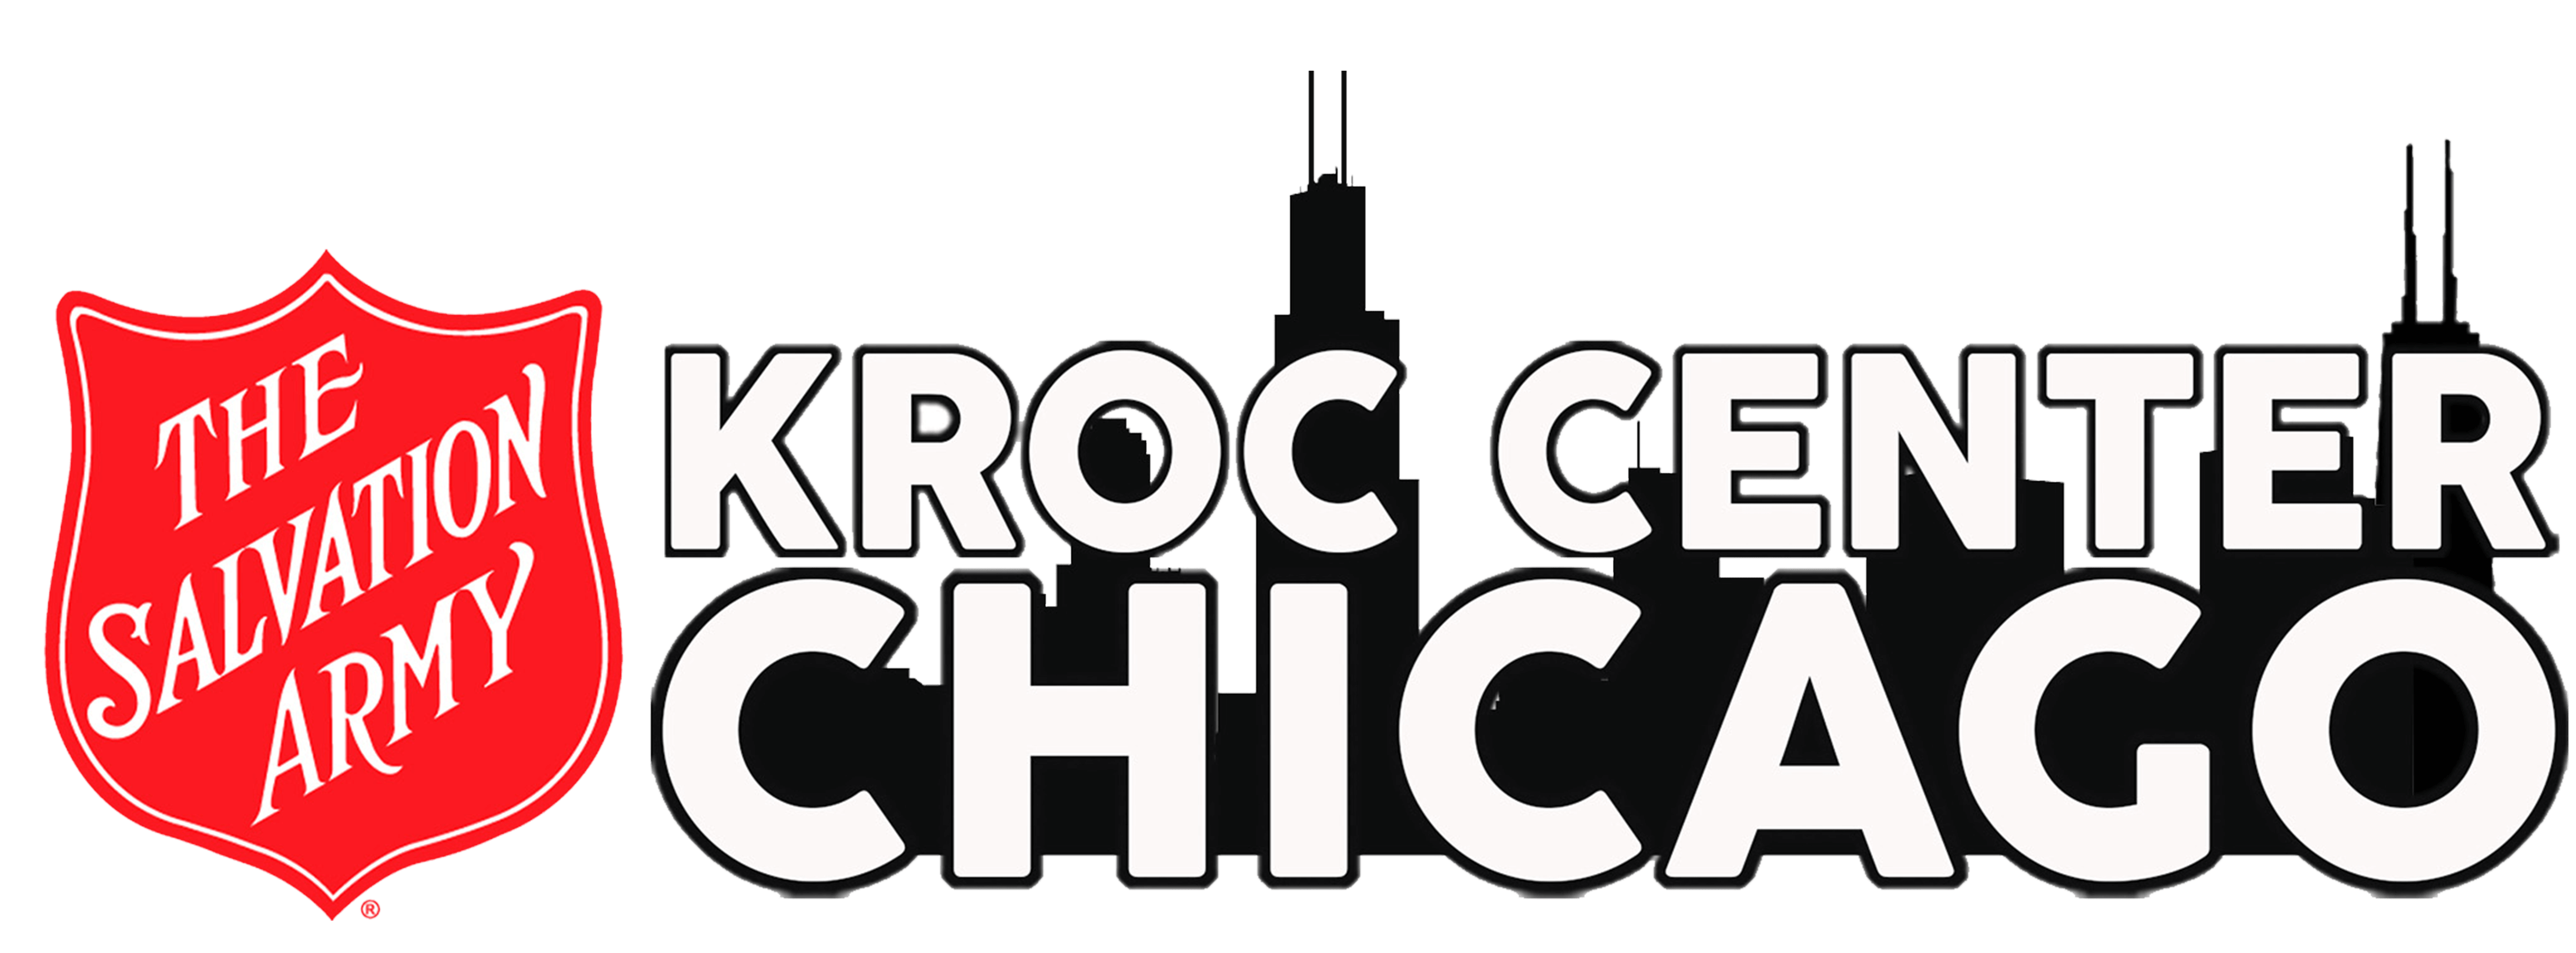 Chicago – The Salvation Army Kroc Center Logo